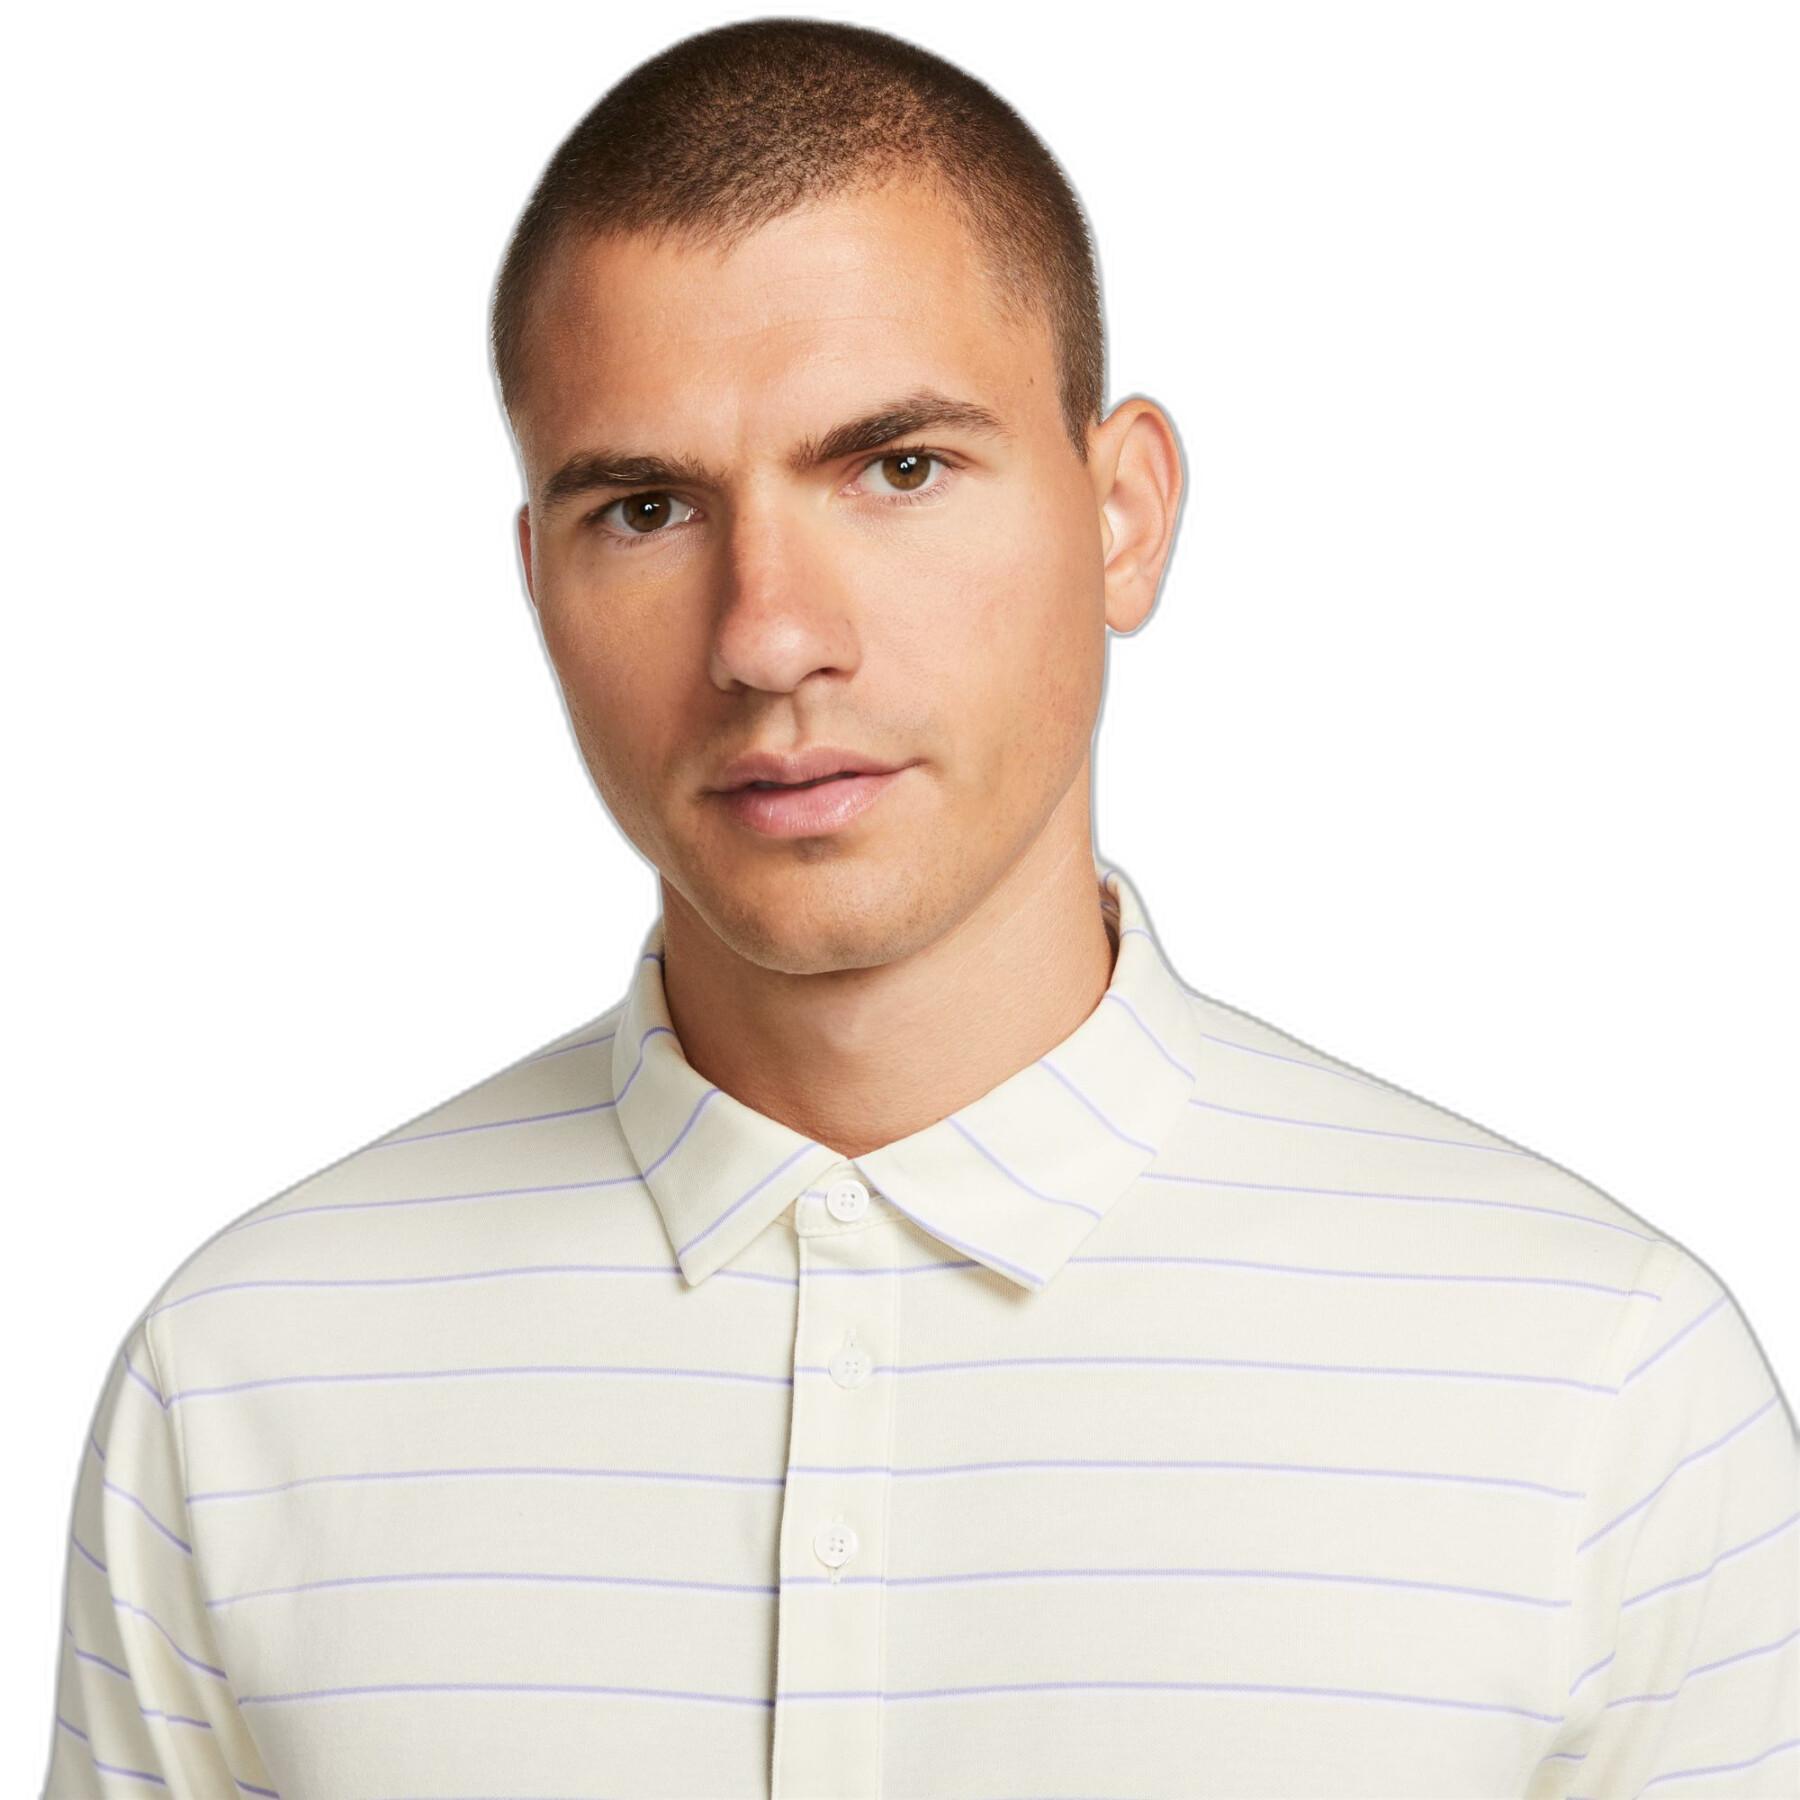 Striped polo shirt Nike Dri-Fit Player